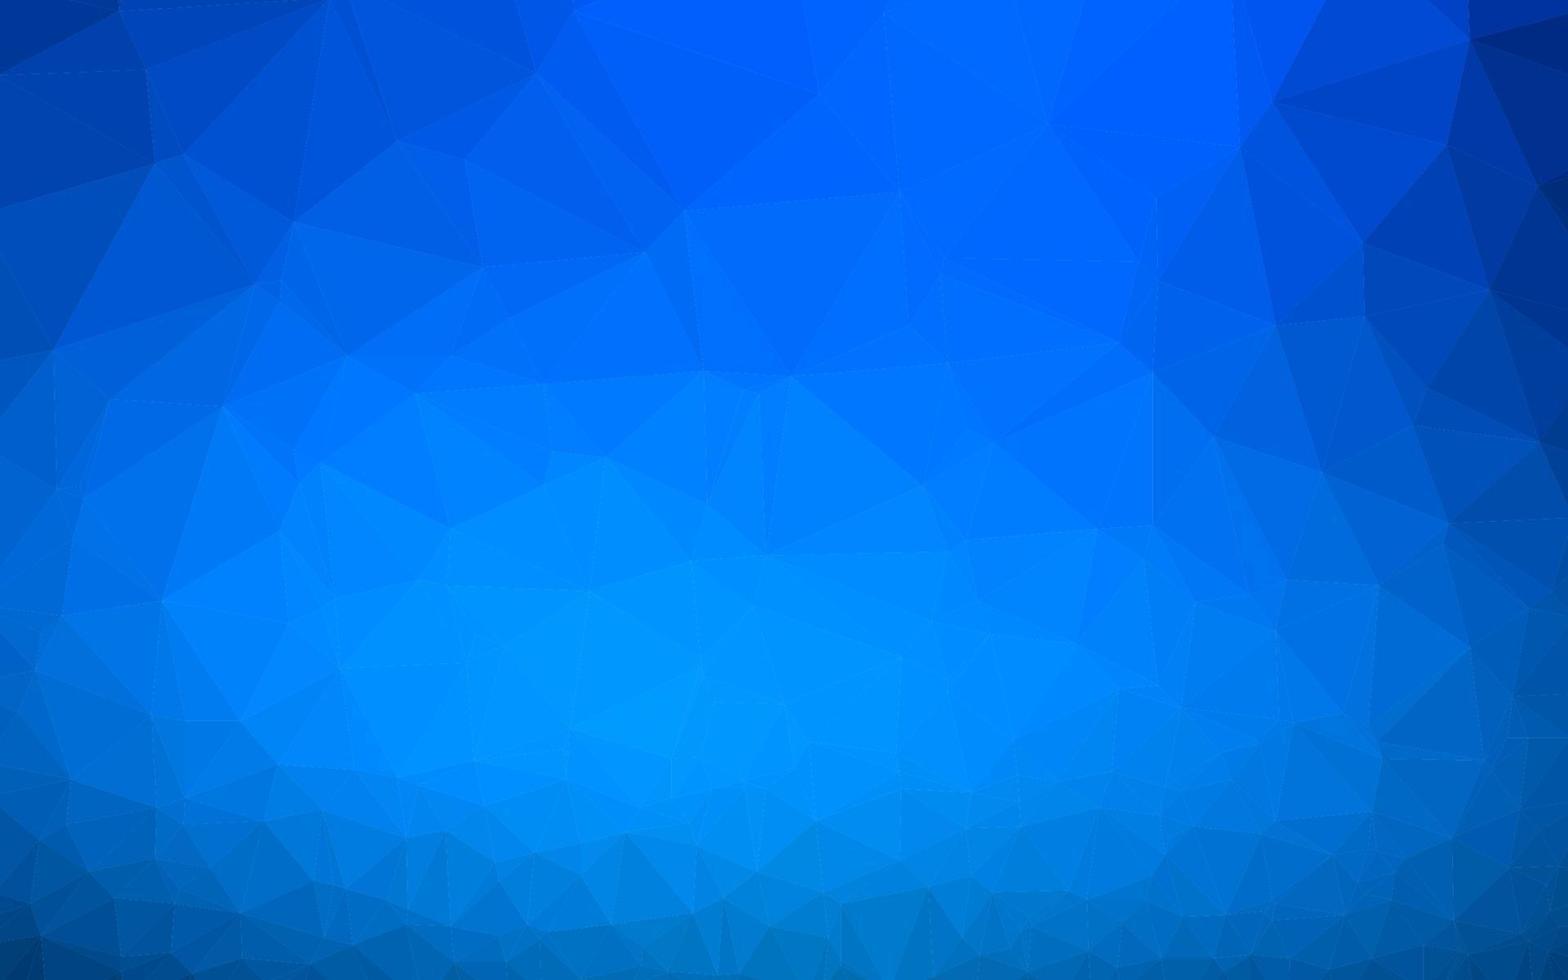 cubierta poligonal abstracta de vector azul claro.